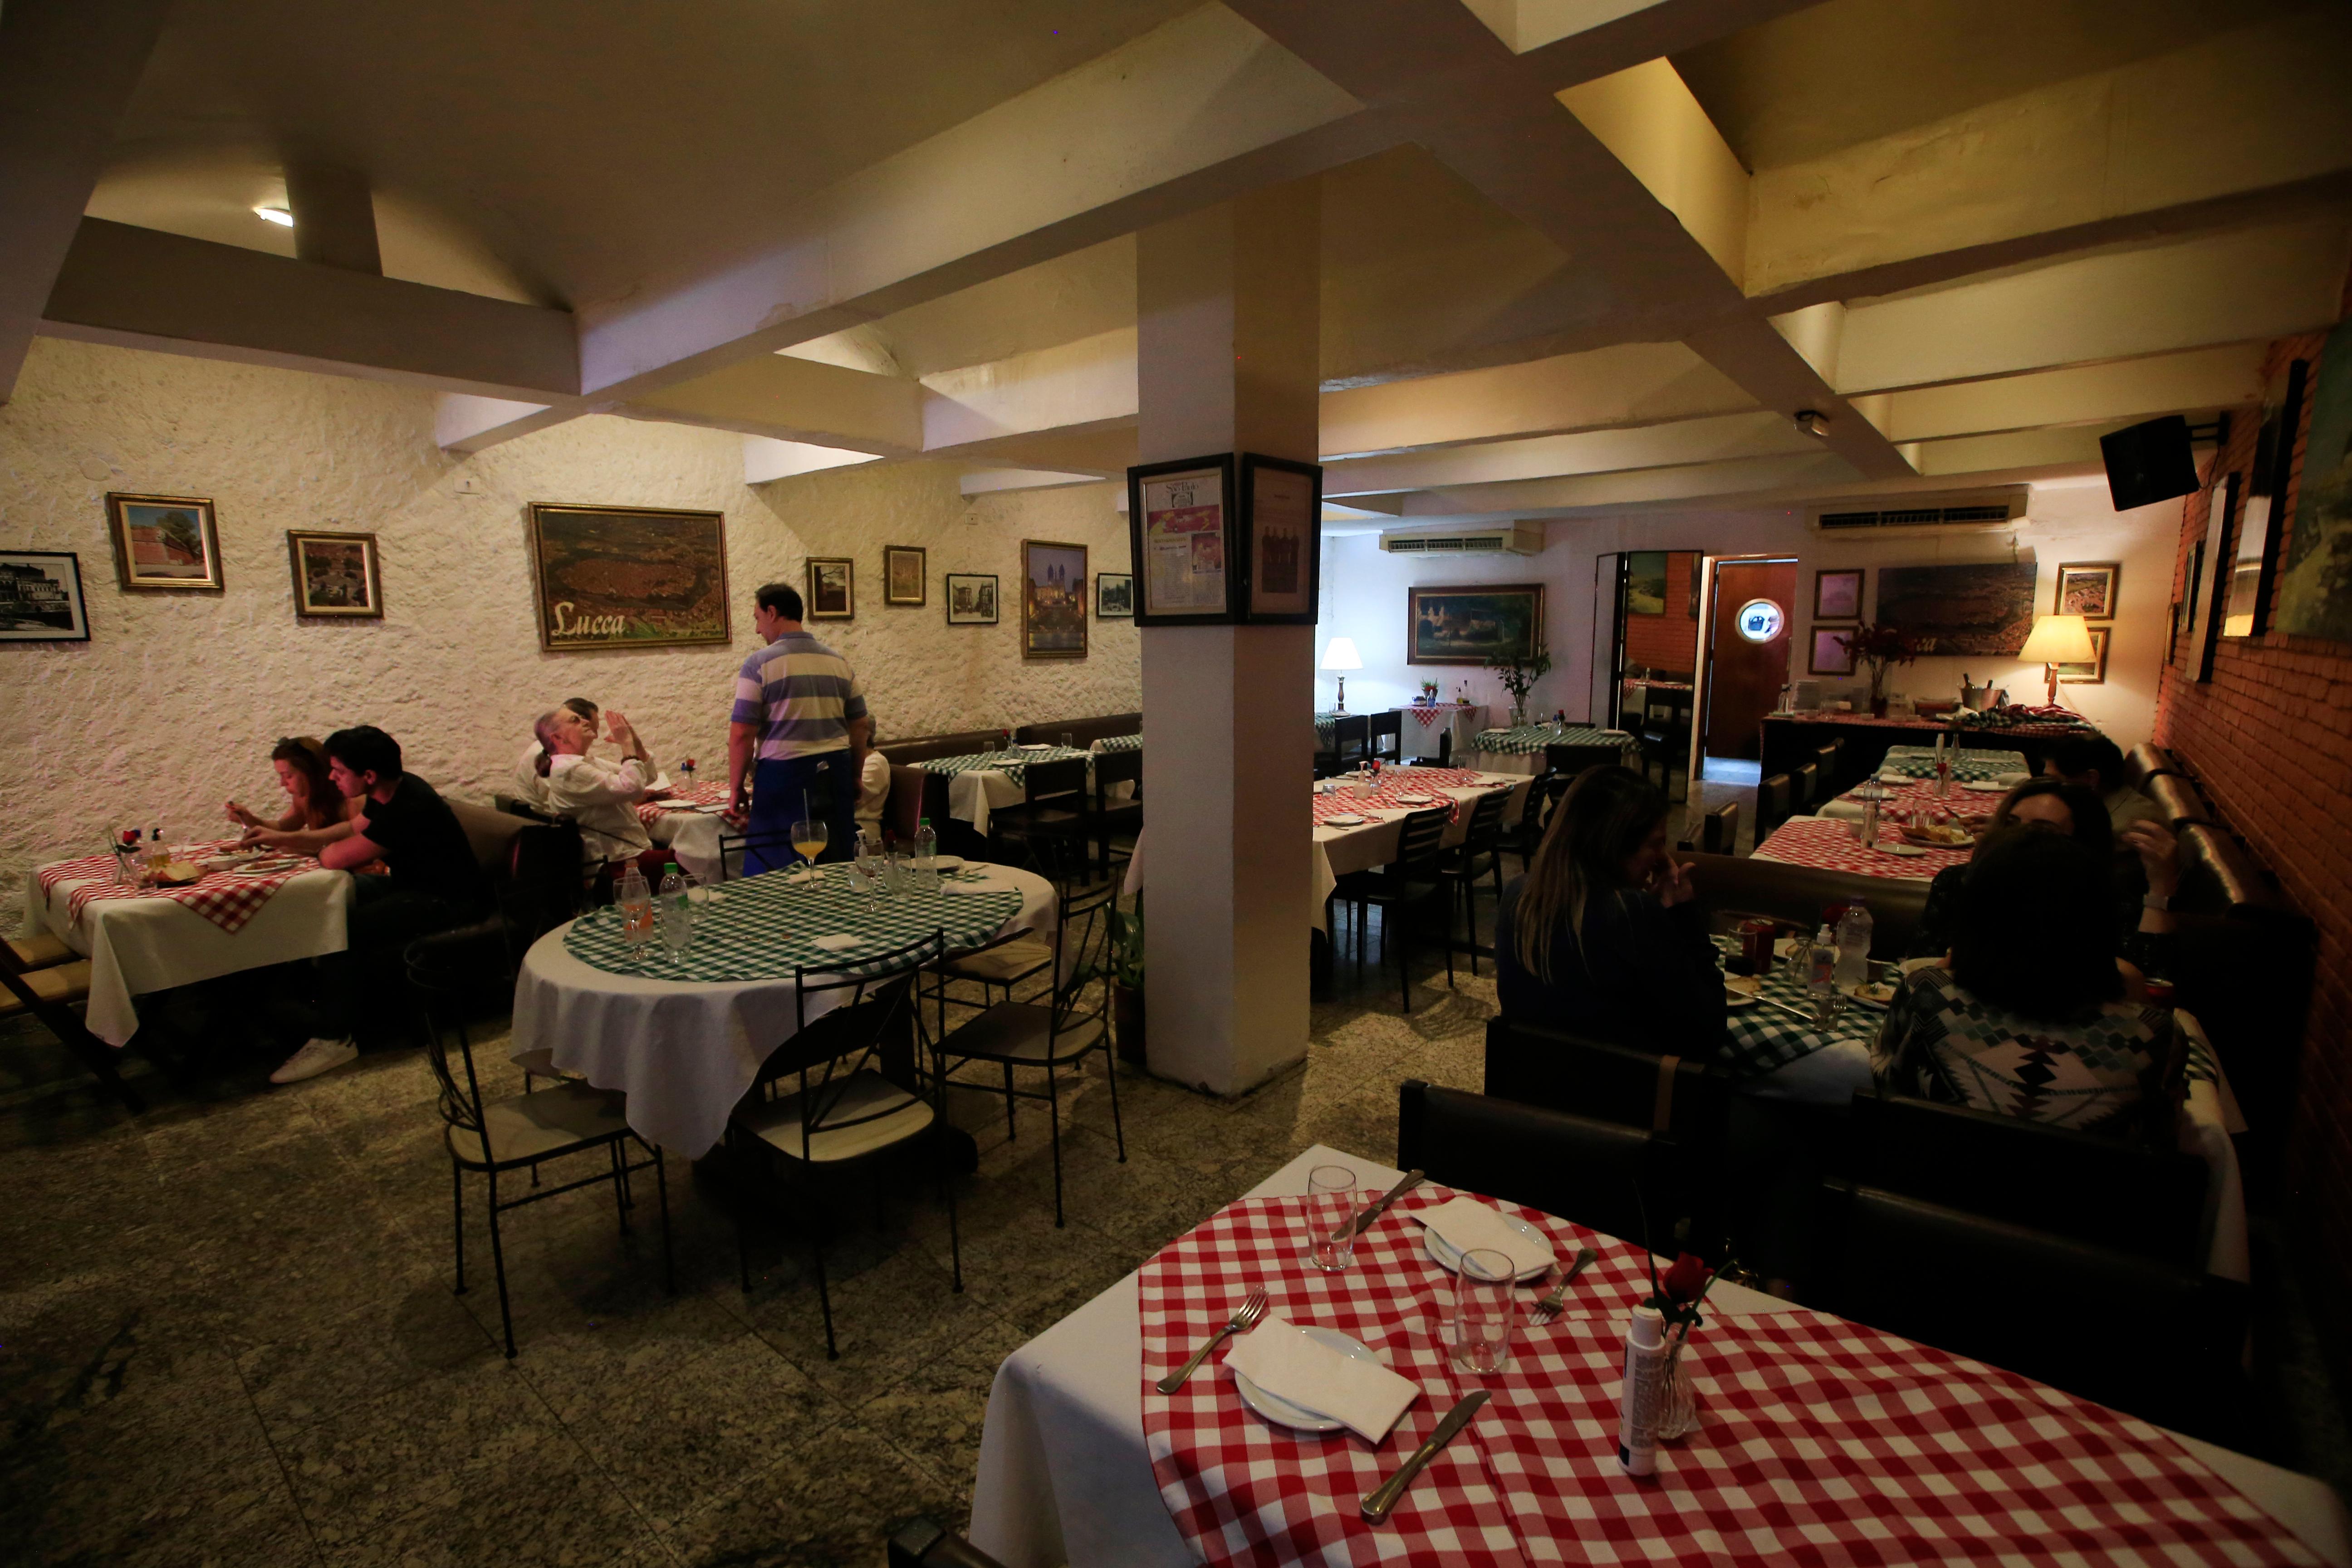 Jornalista oferece aulas de xadrez em restaurante vegetariano no